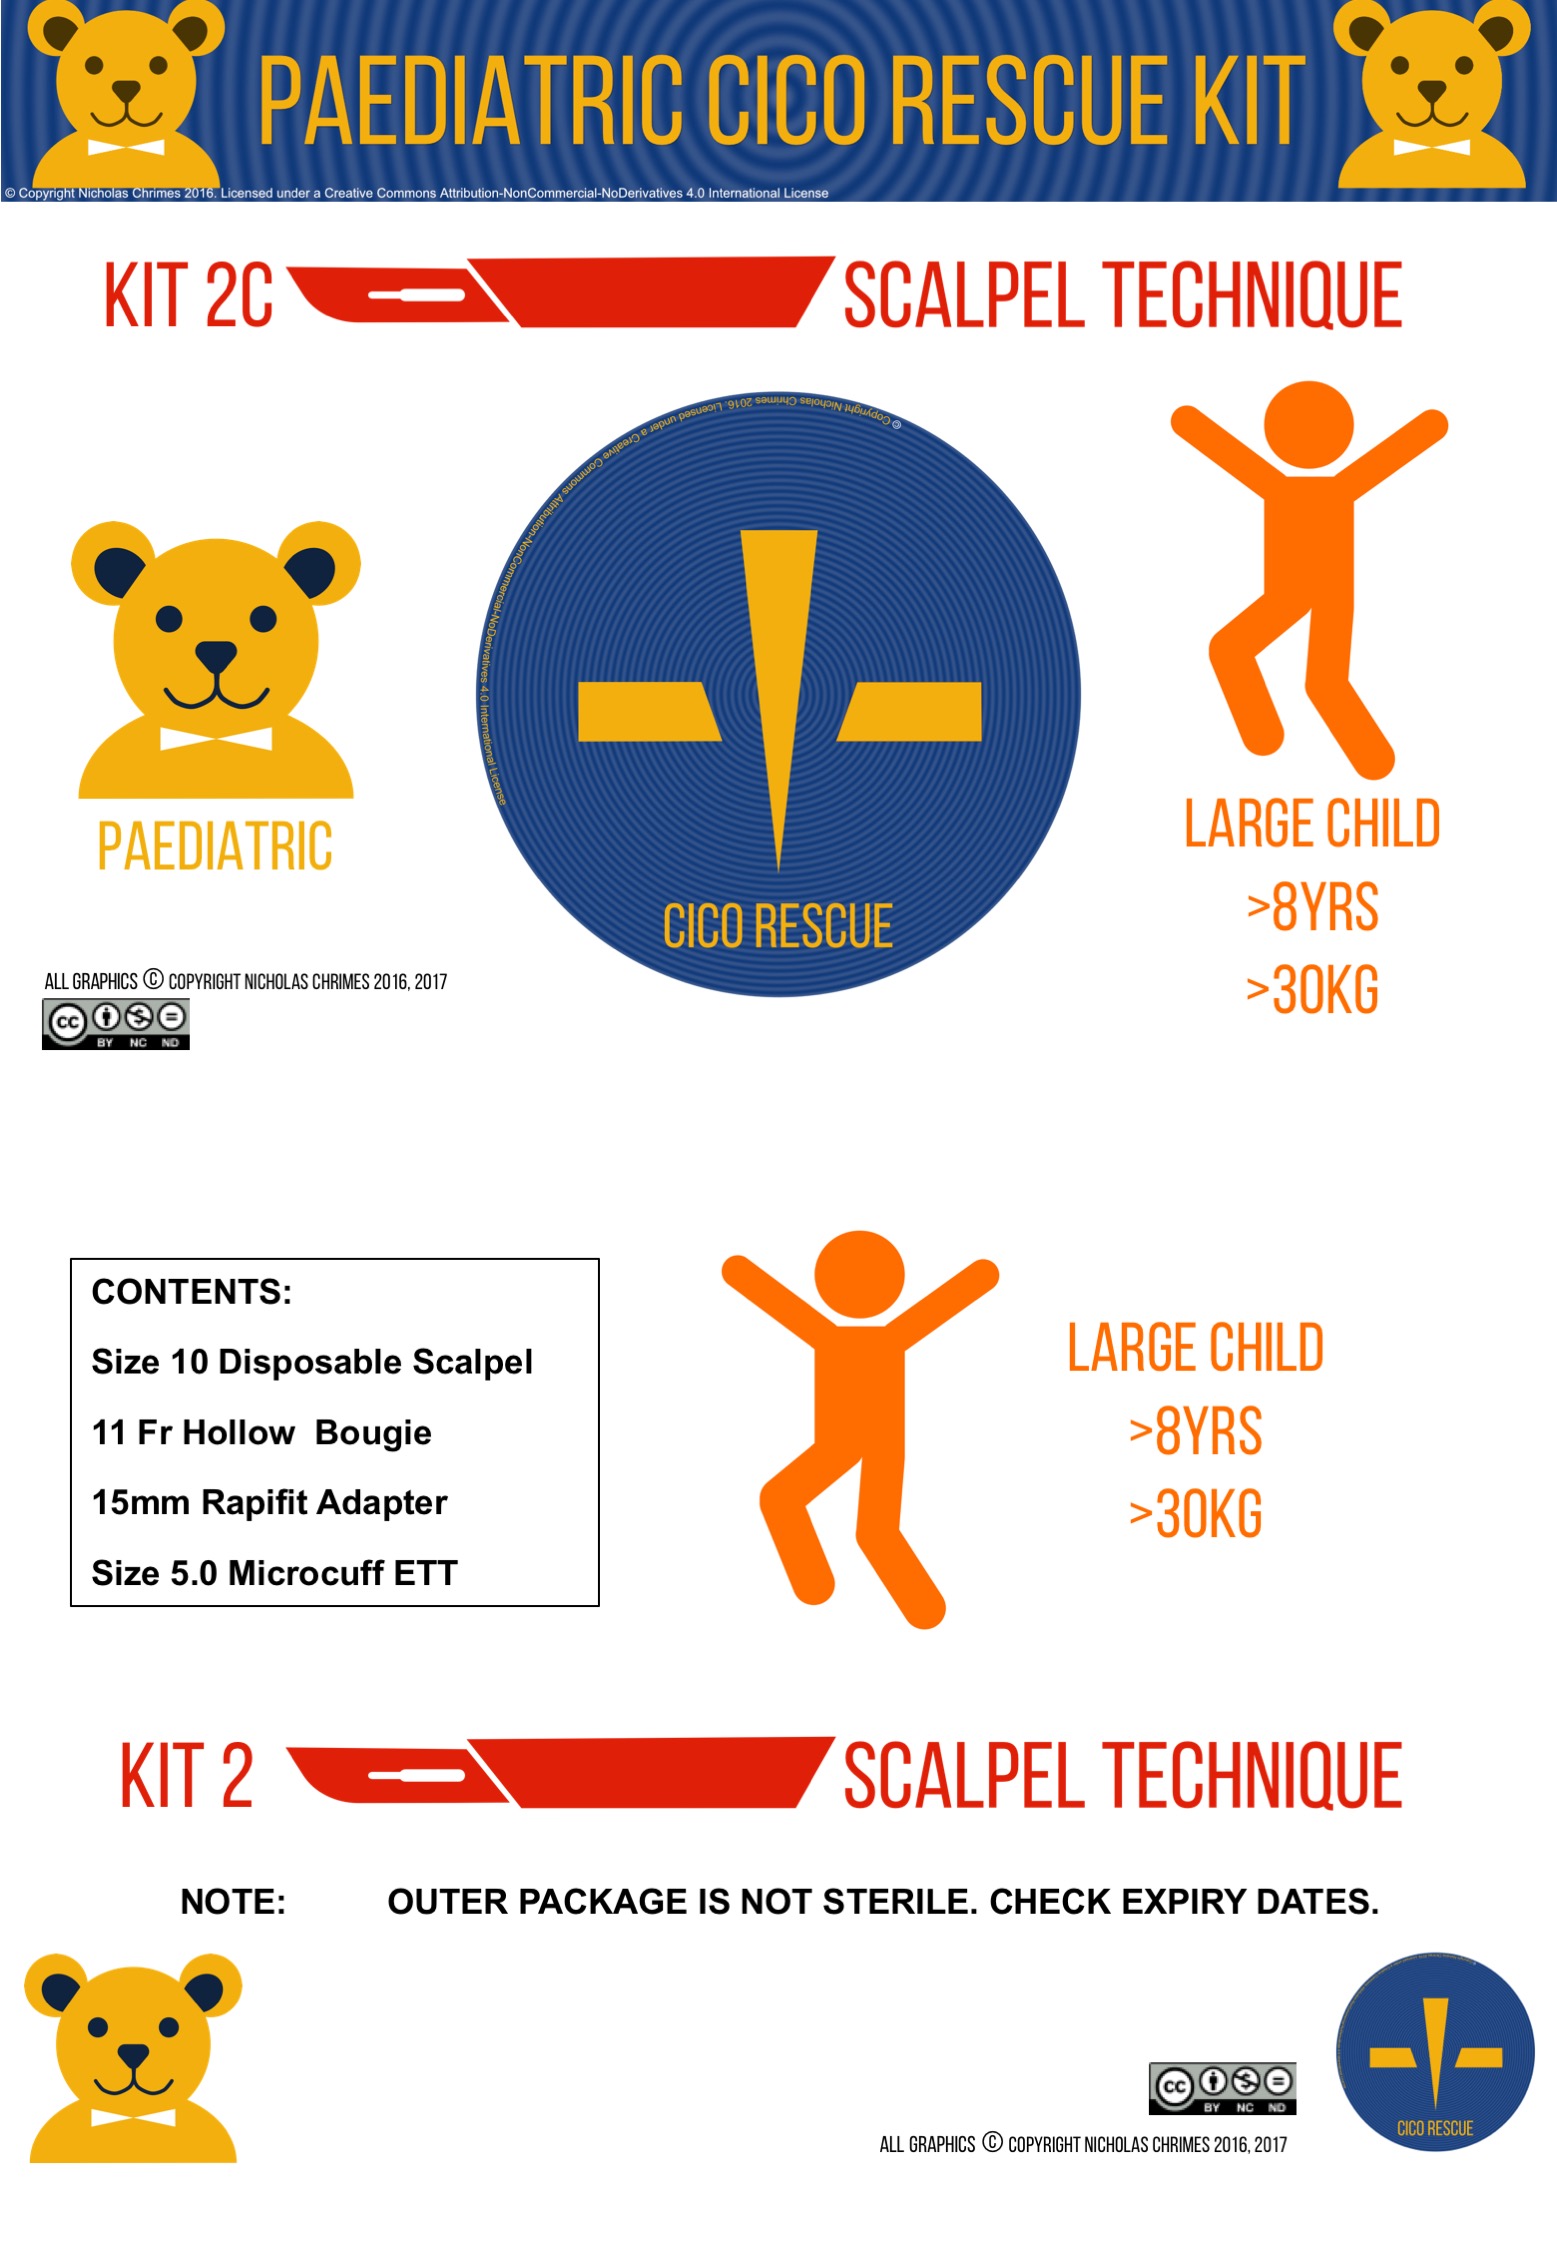 大儿童头皮CICO救援工具包-完整的标签和;内容